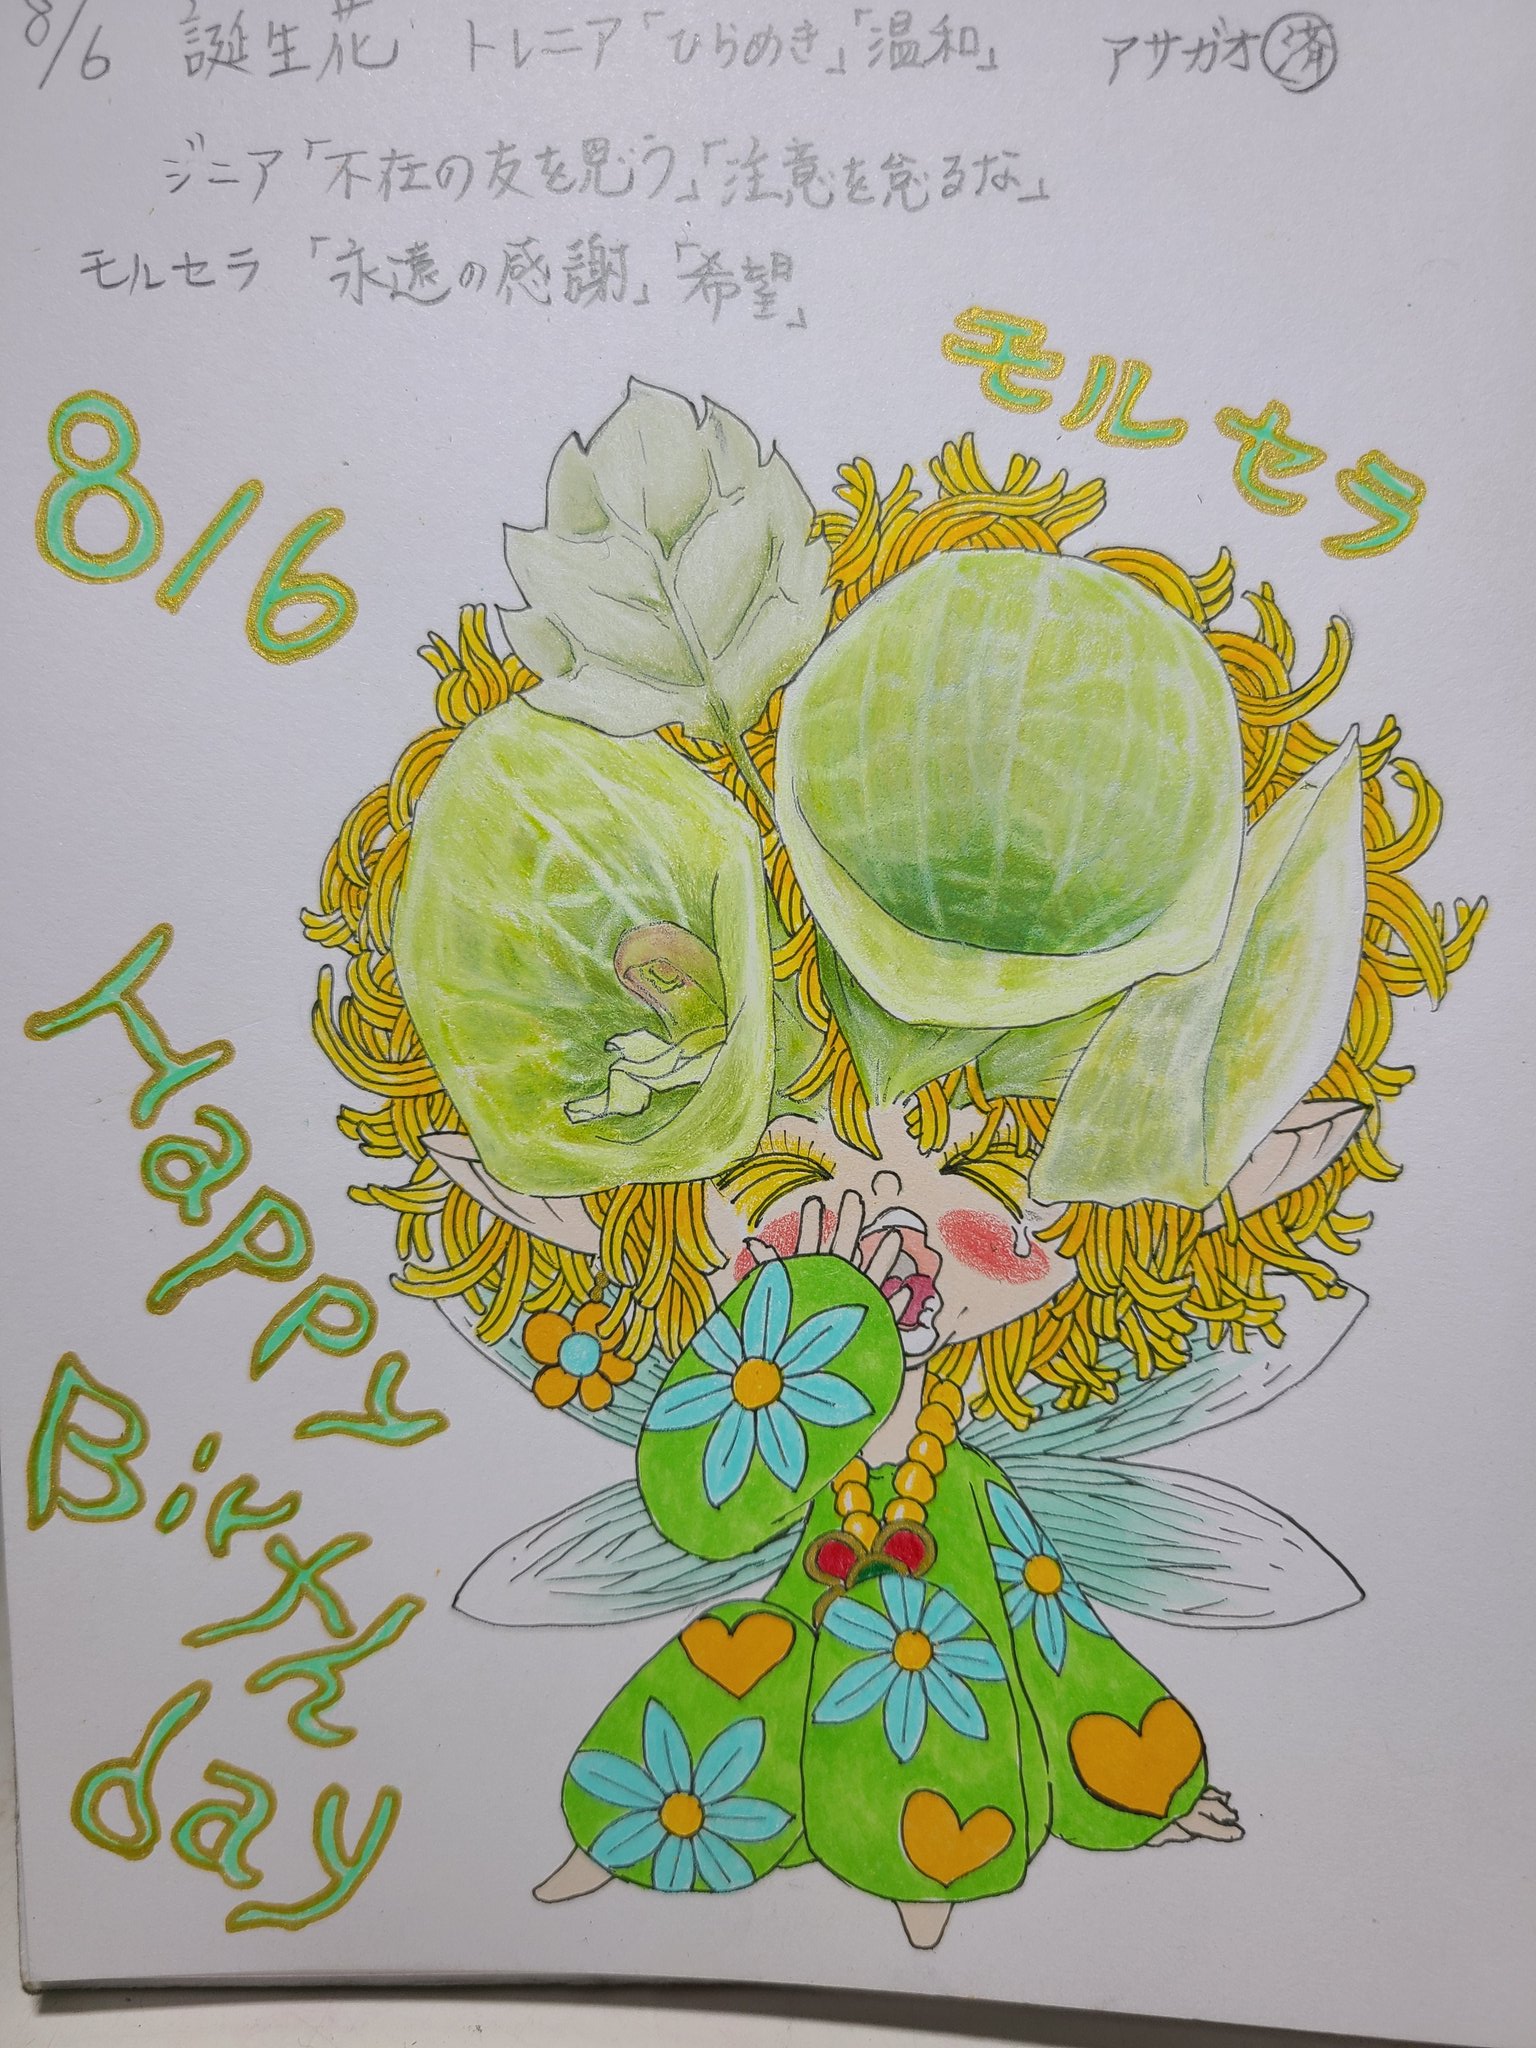 Koukishin 8月6日生まれの皆さん誕生日おめでとう 8月6日 毎日誰かの誕生日 誕生日 花の妖精シリーズ 誕生花 花言葉 毎日投稿 イラスト 誕生日おめでとう Happybirthday モルセラ 花のある暮らし 花 Illustration Handdrawing